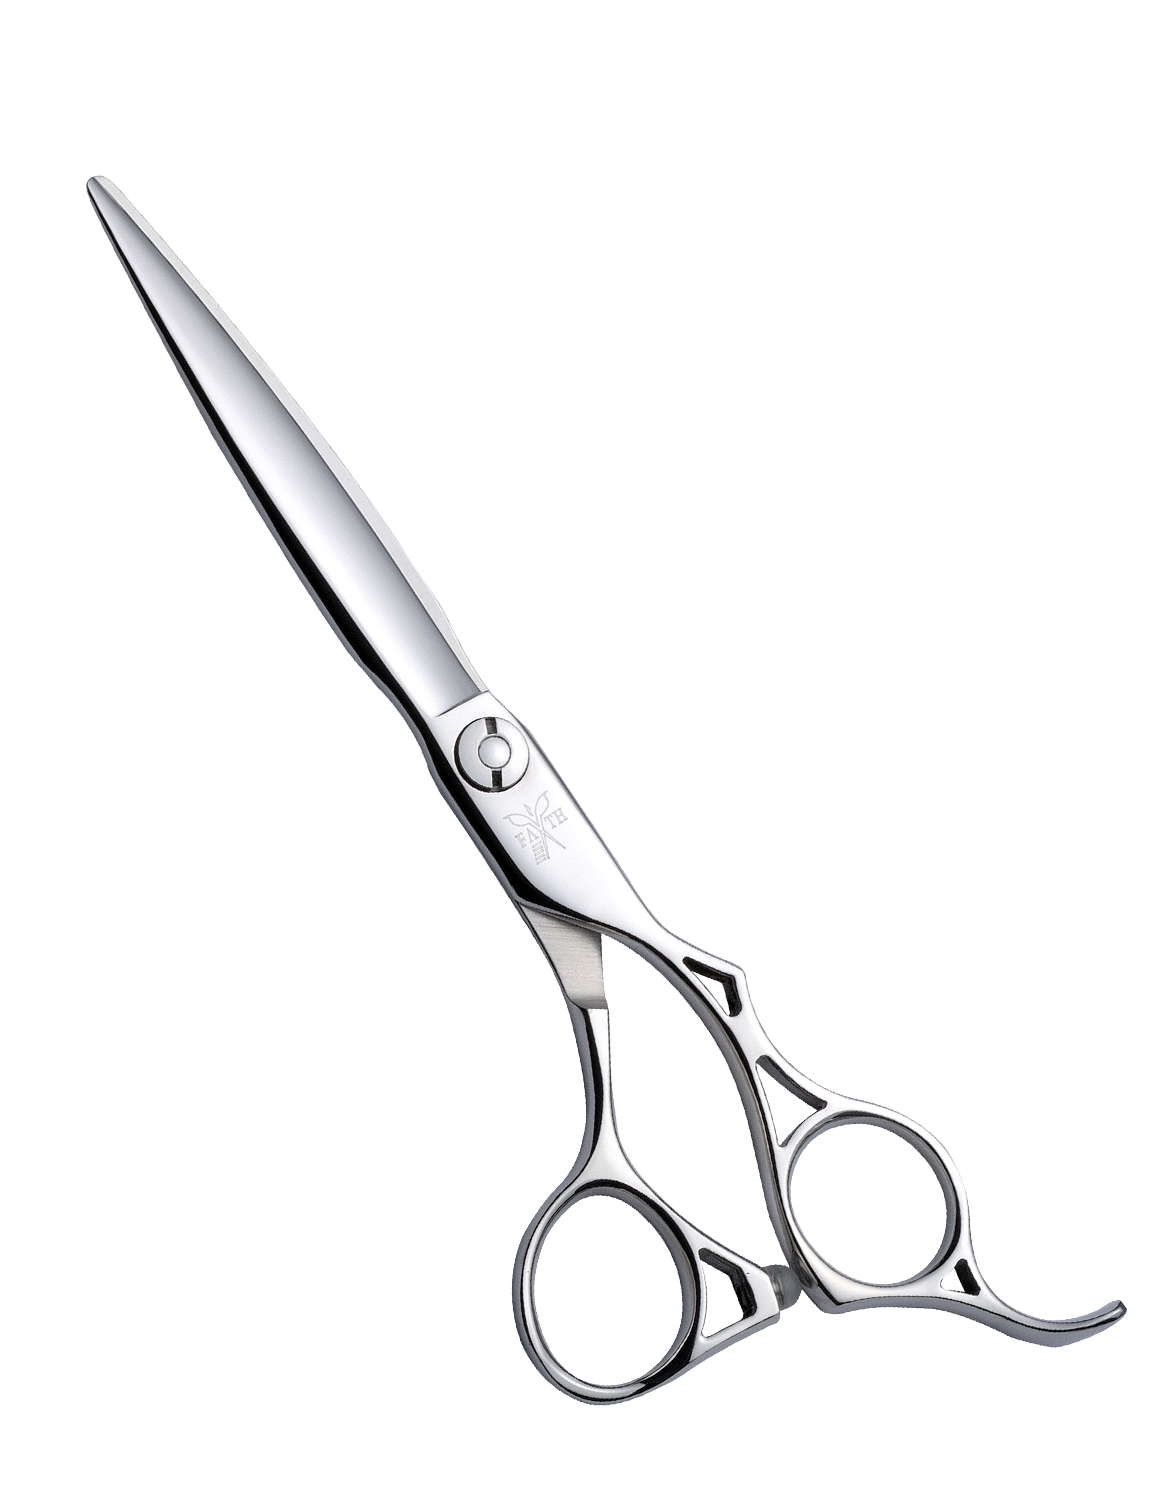 shears clipart hairdressing scissors